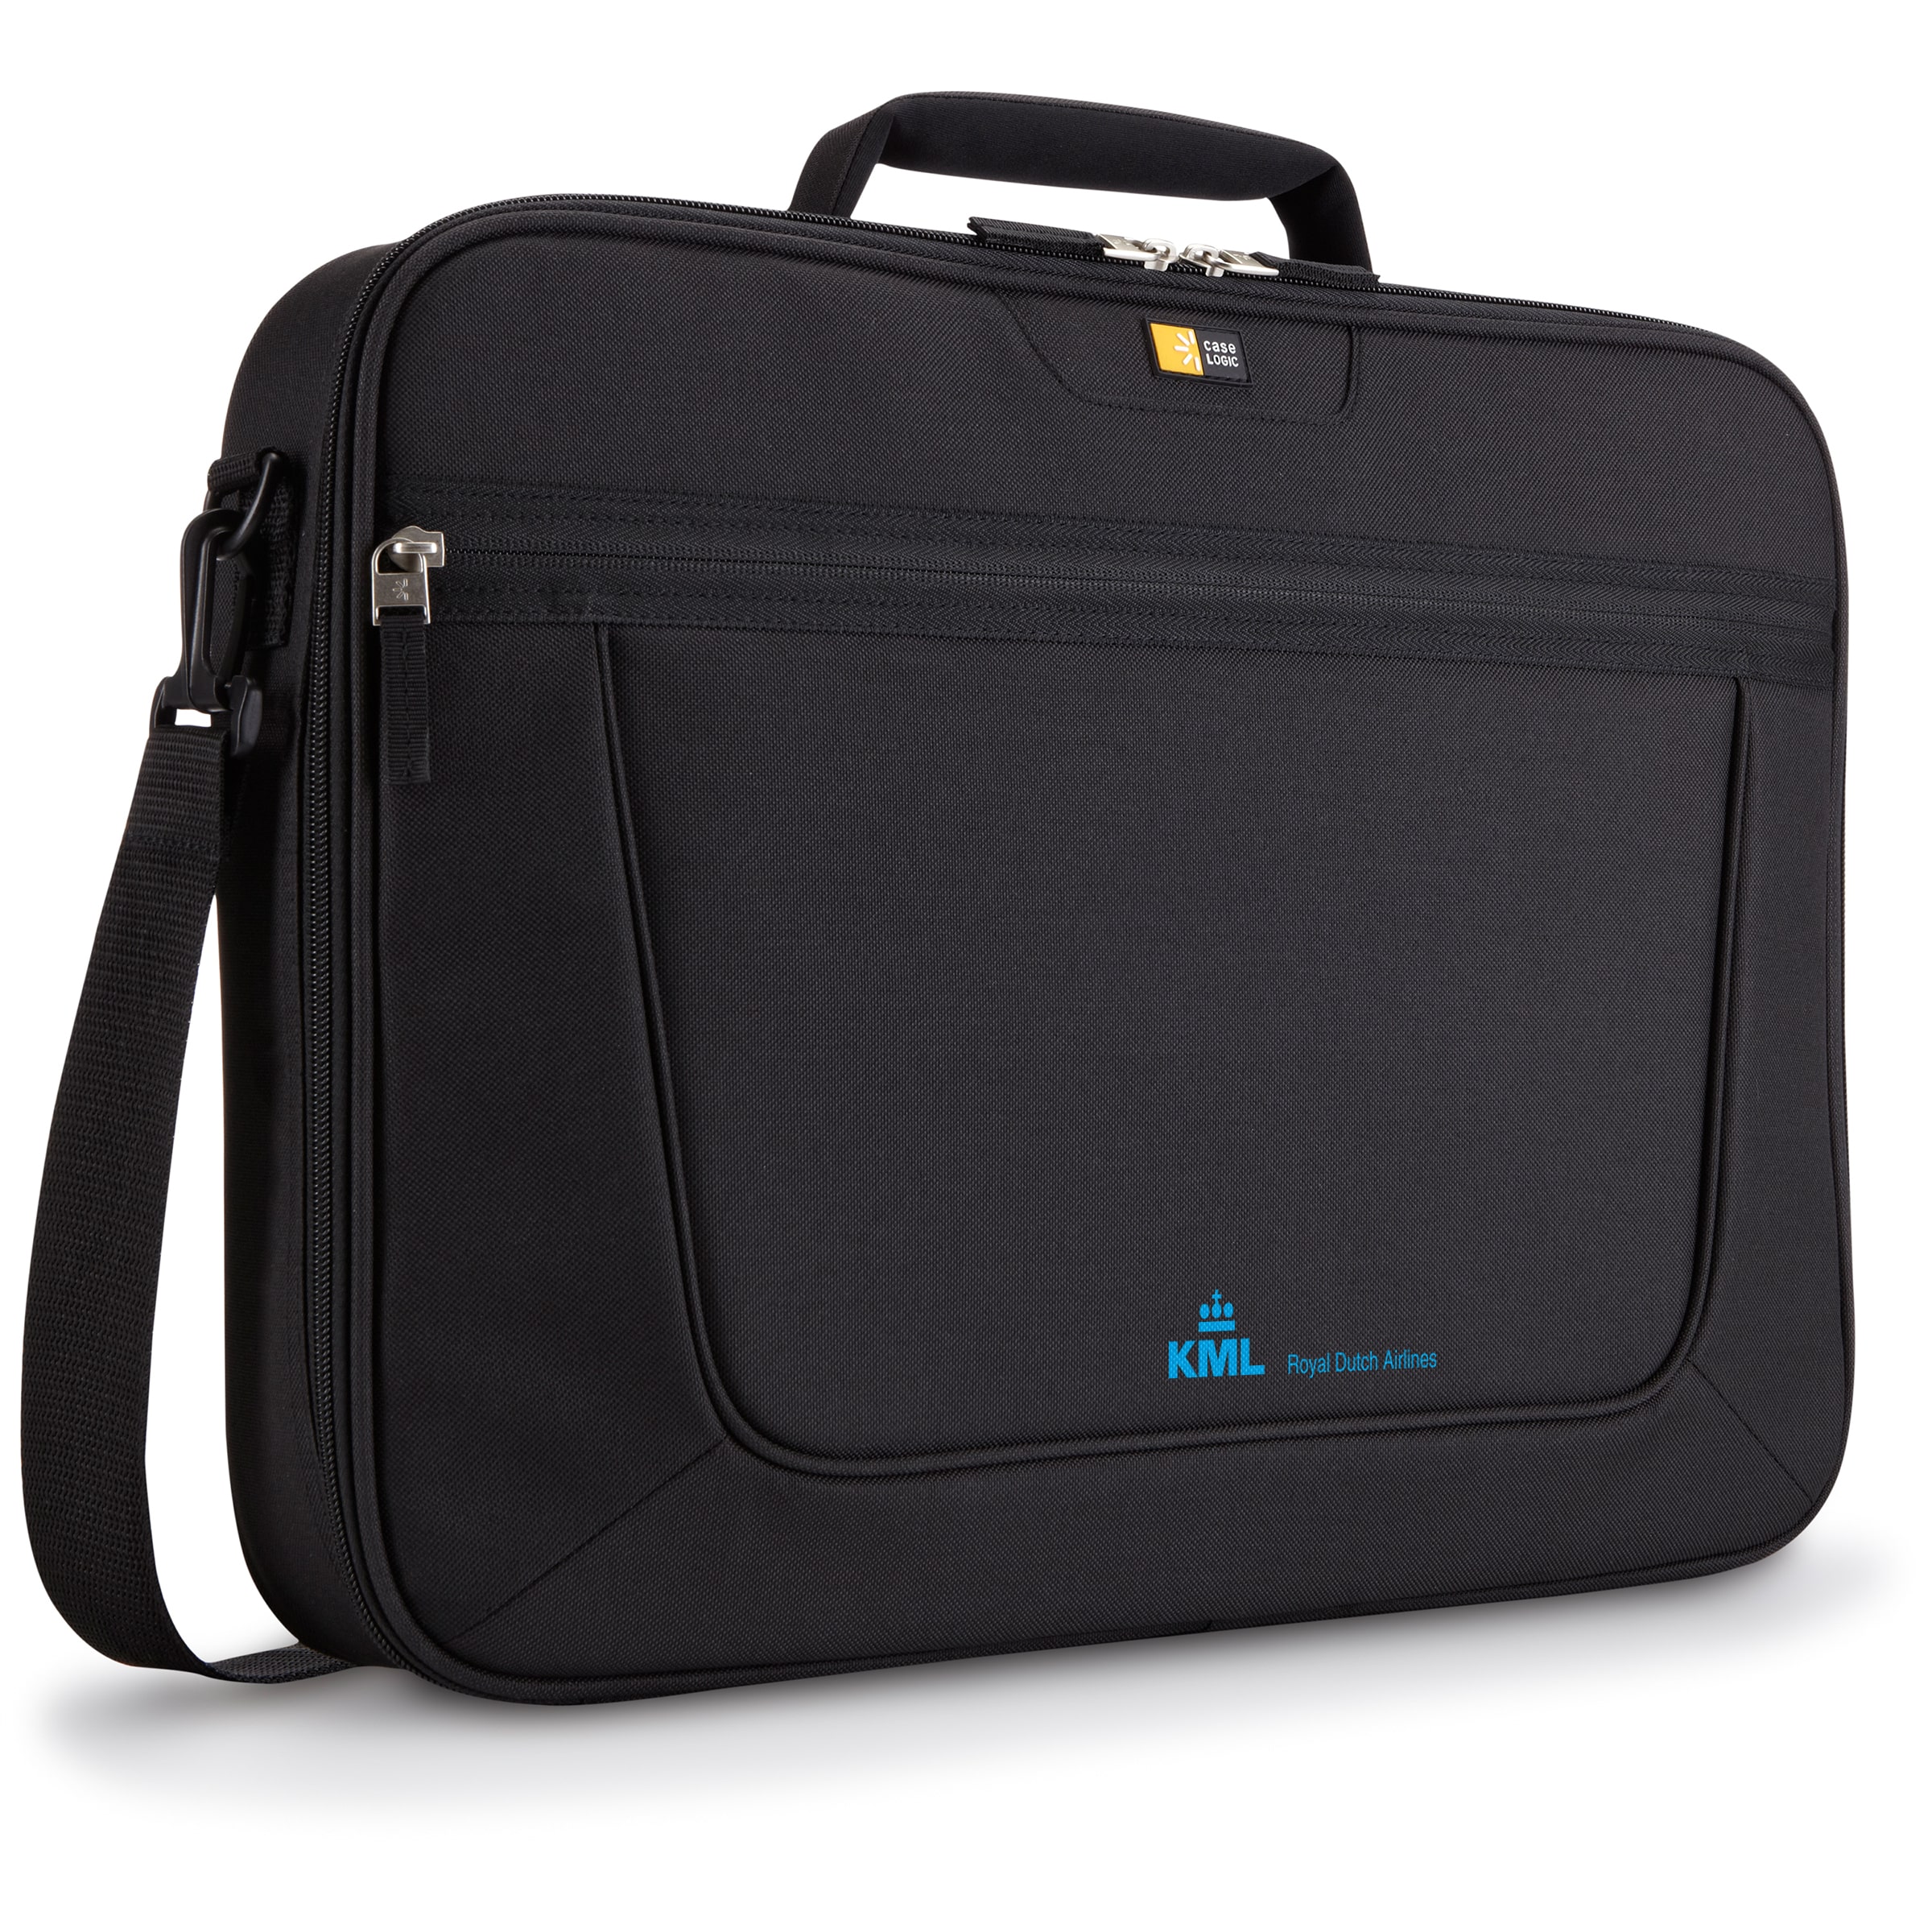 Case Logic Value Laptop Bag 17.3